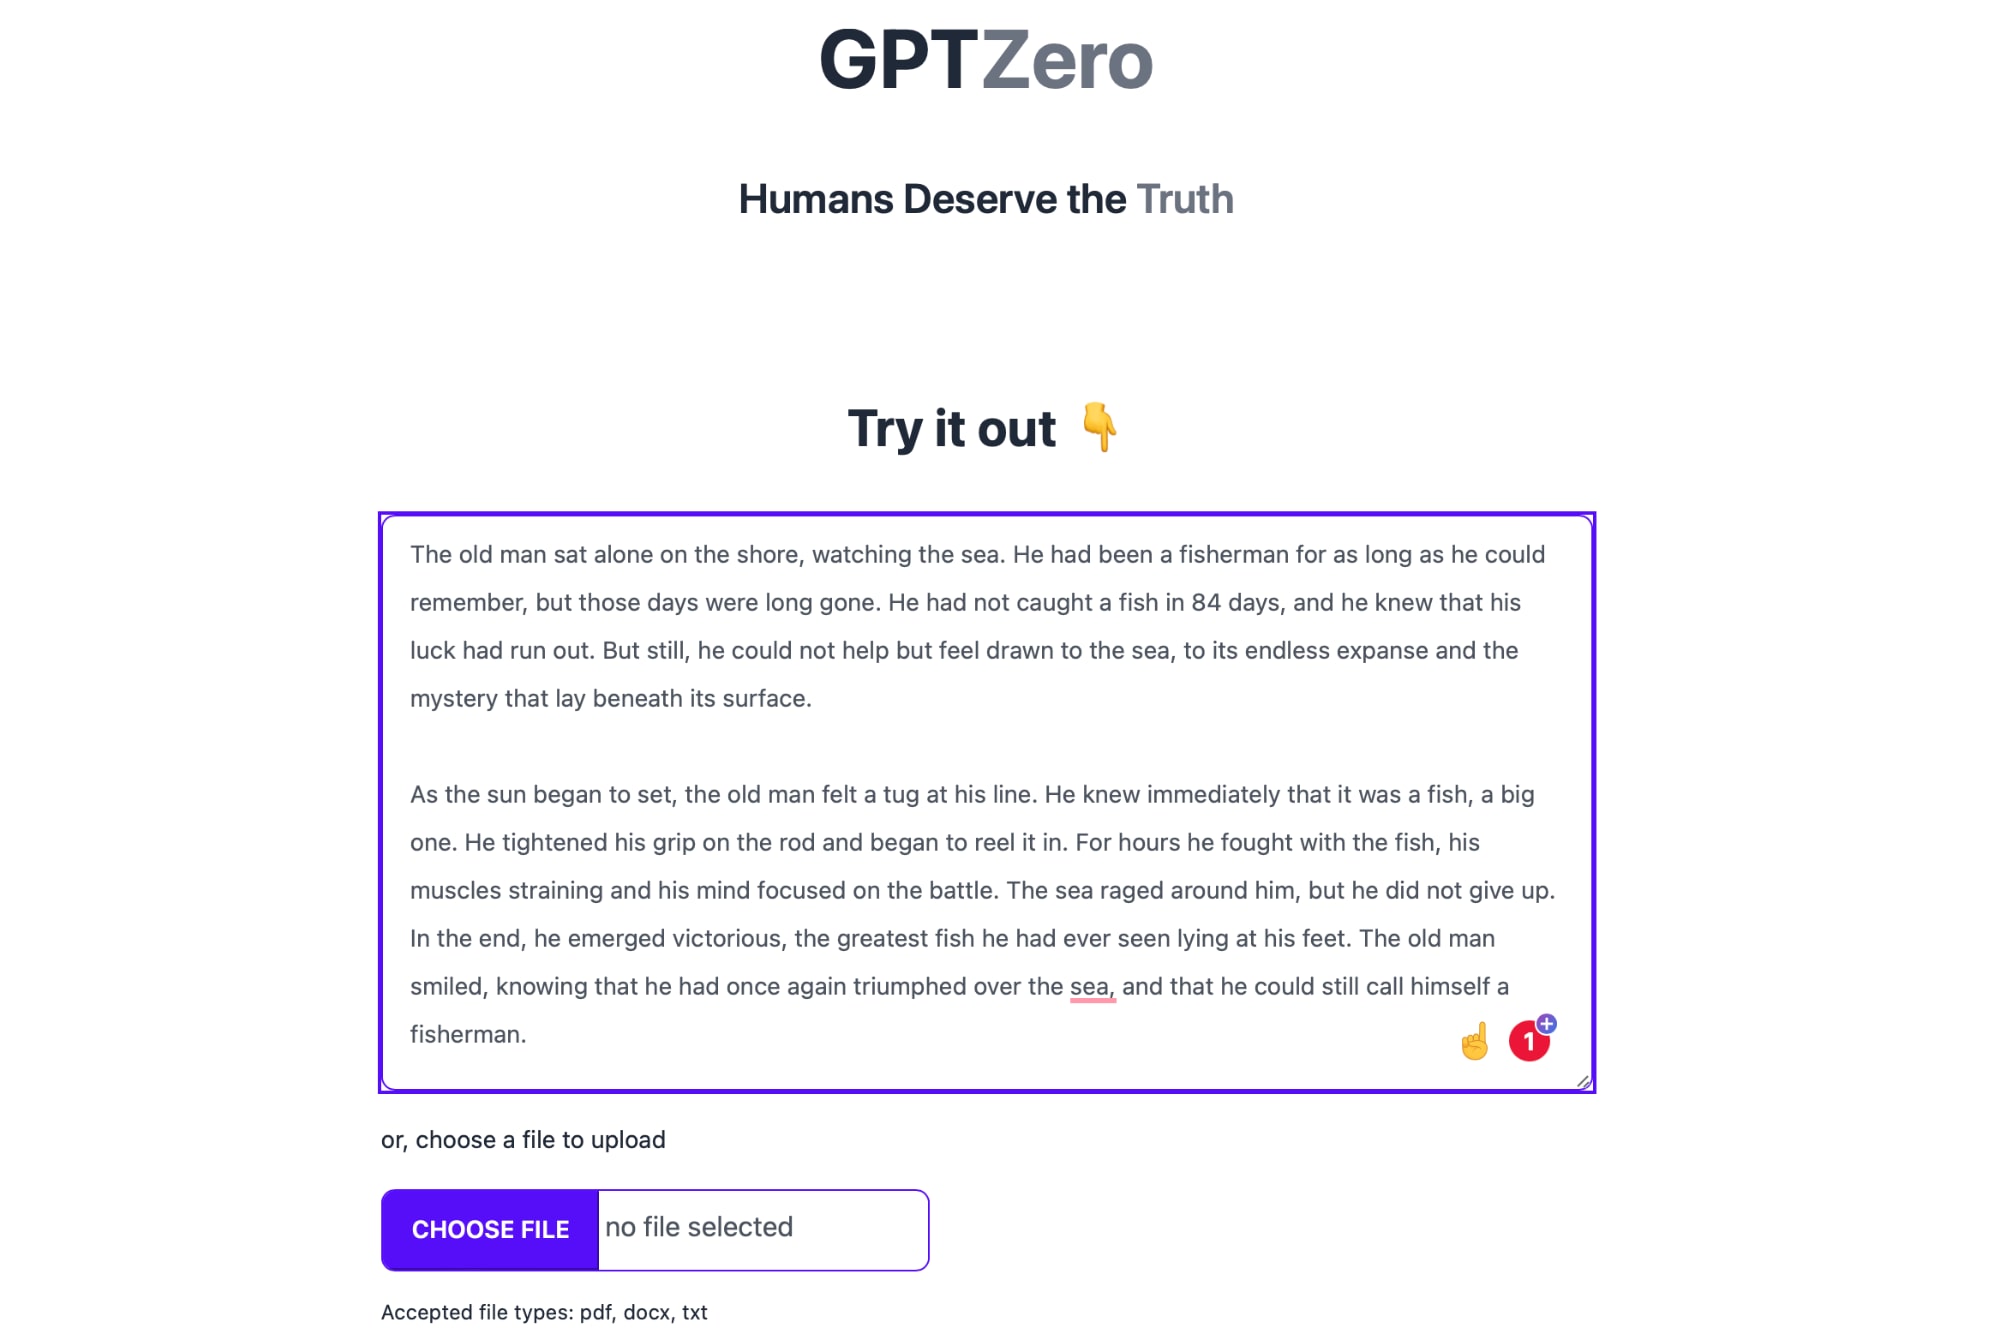 وب سایت GPTZero با یک جعبه متن و یک دکمه ارسال بسیار ساده است.